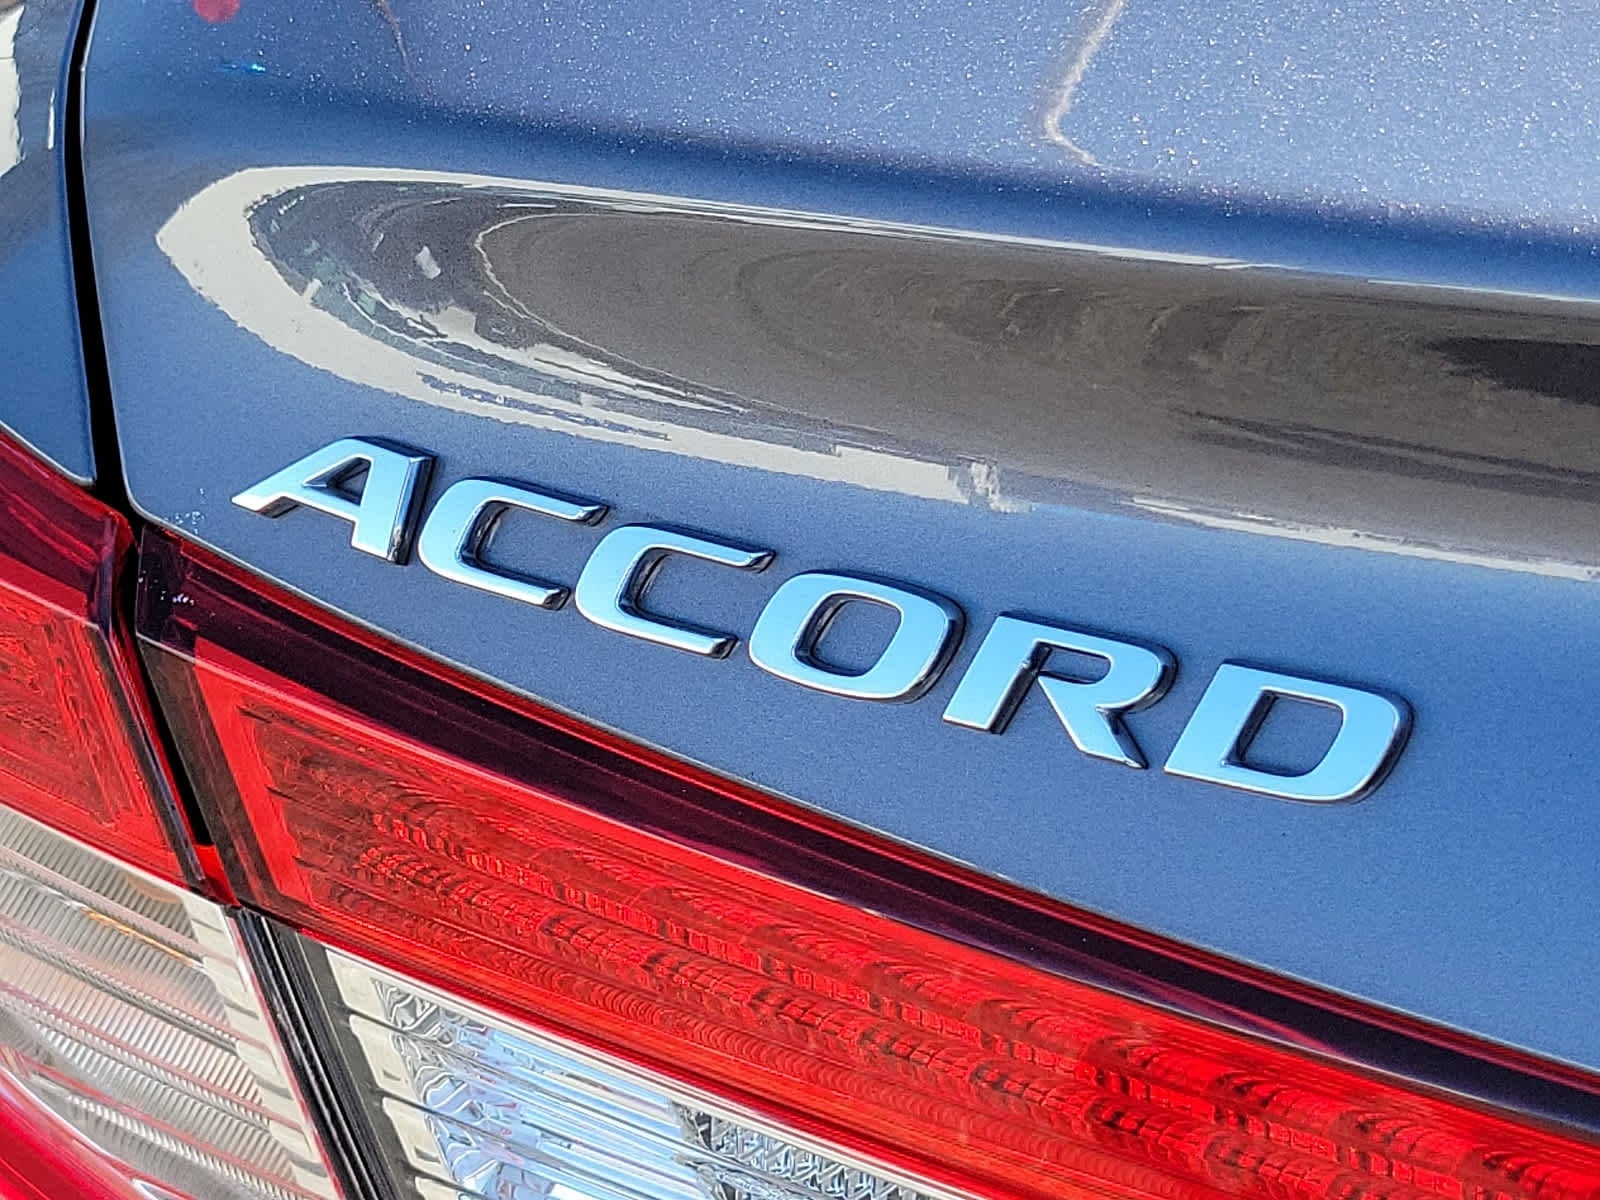 2020 Honda Accord EX-L